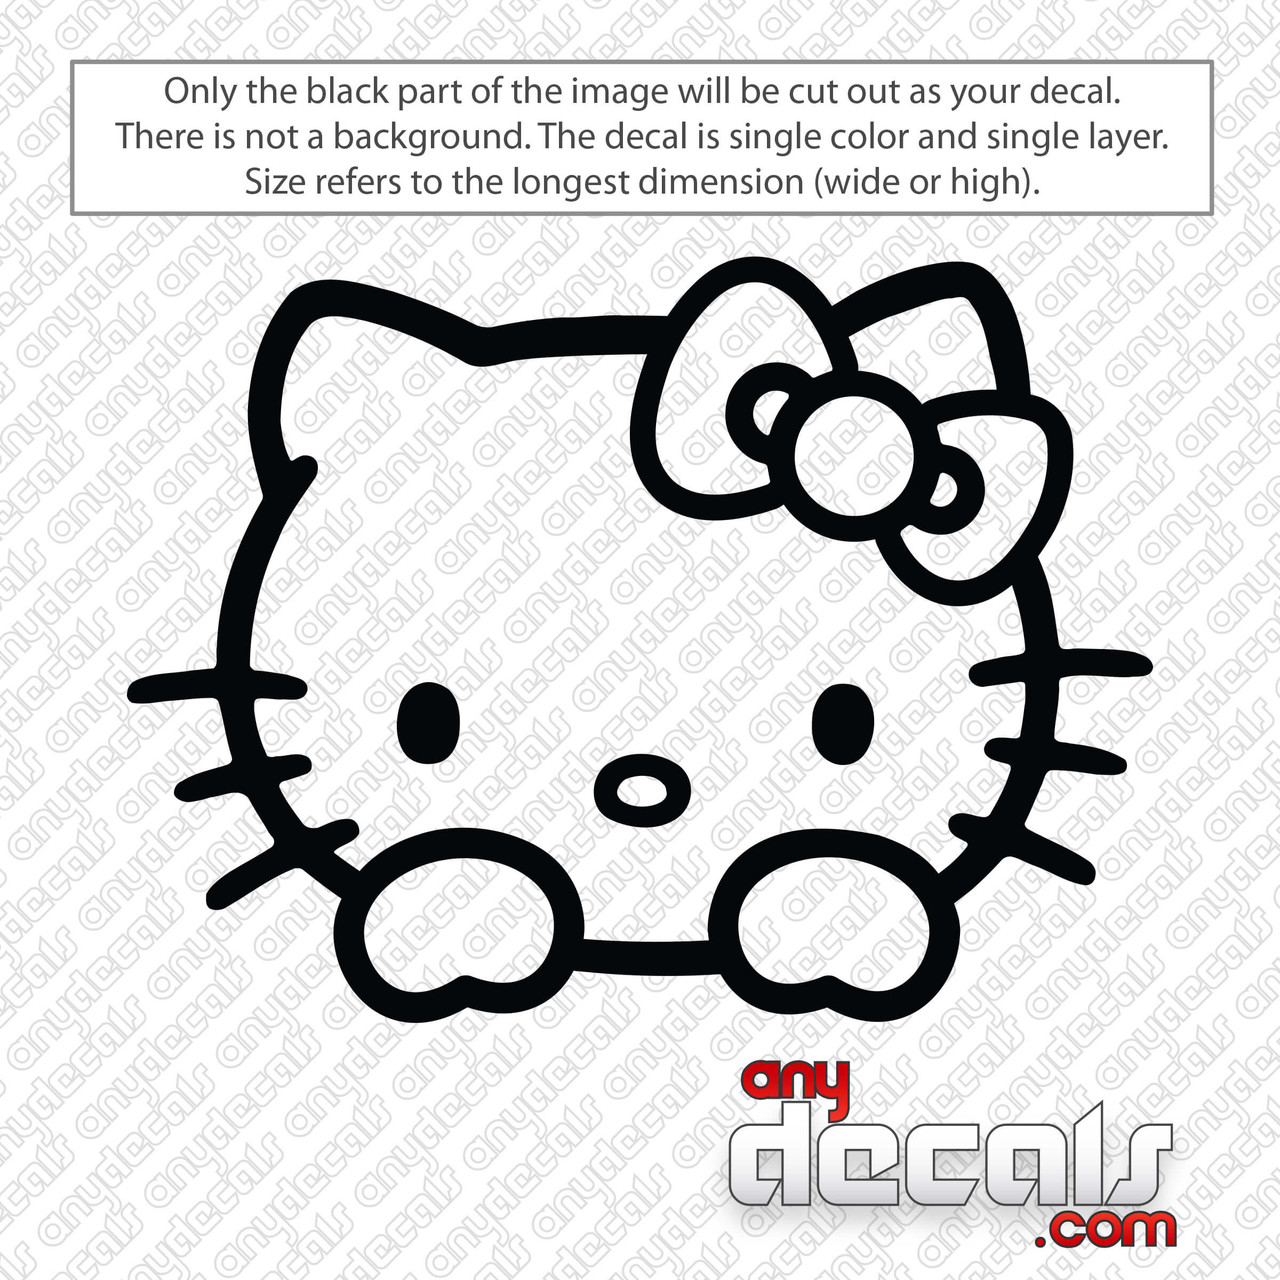 Hello Kitty Decal Sticker - HELLO-KITTY